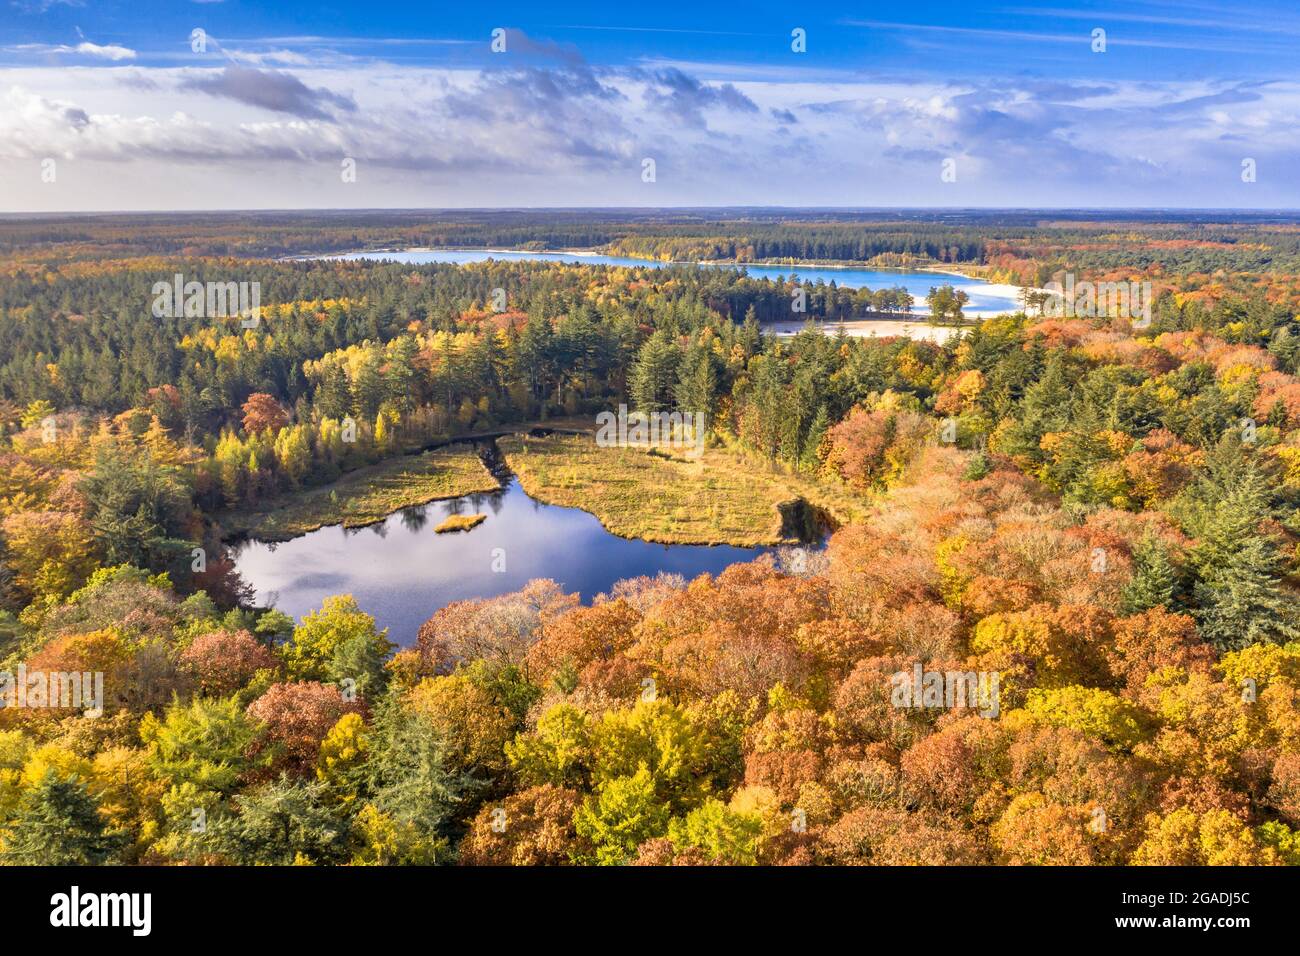 Luftaufnahme von Seen im Herbstwald in Gasselte, Drenthe. Landschaftsbild in der Natur europas. Stockfoto